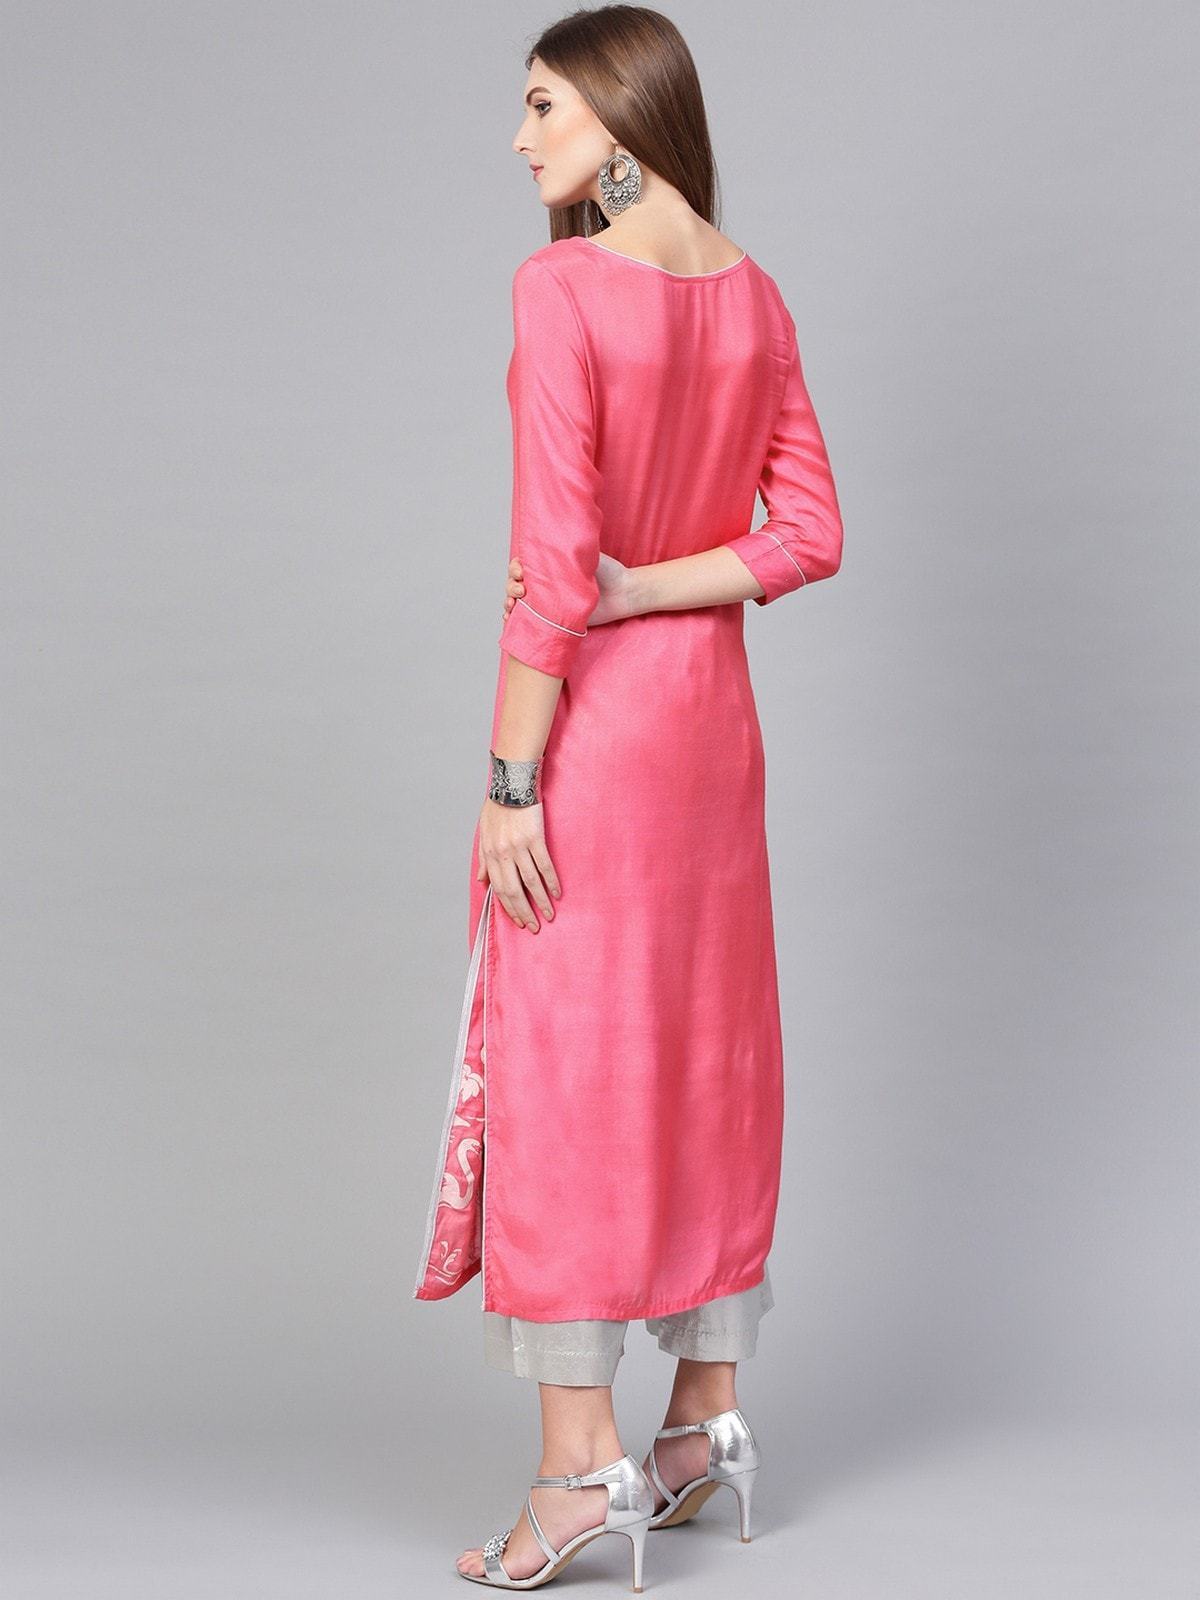 Women's Pink Lotus Inspired Swan Printed Kurta - Pannkh